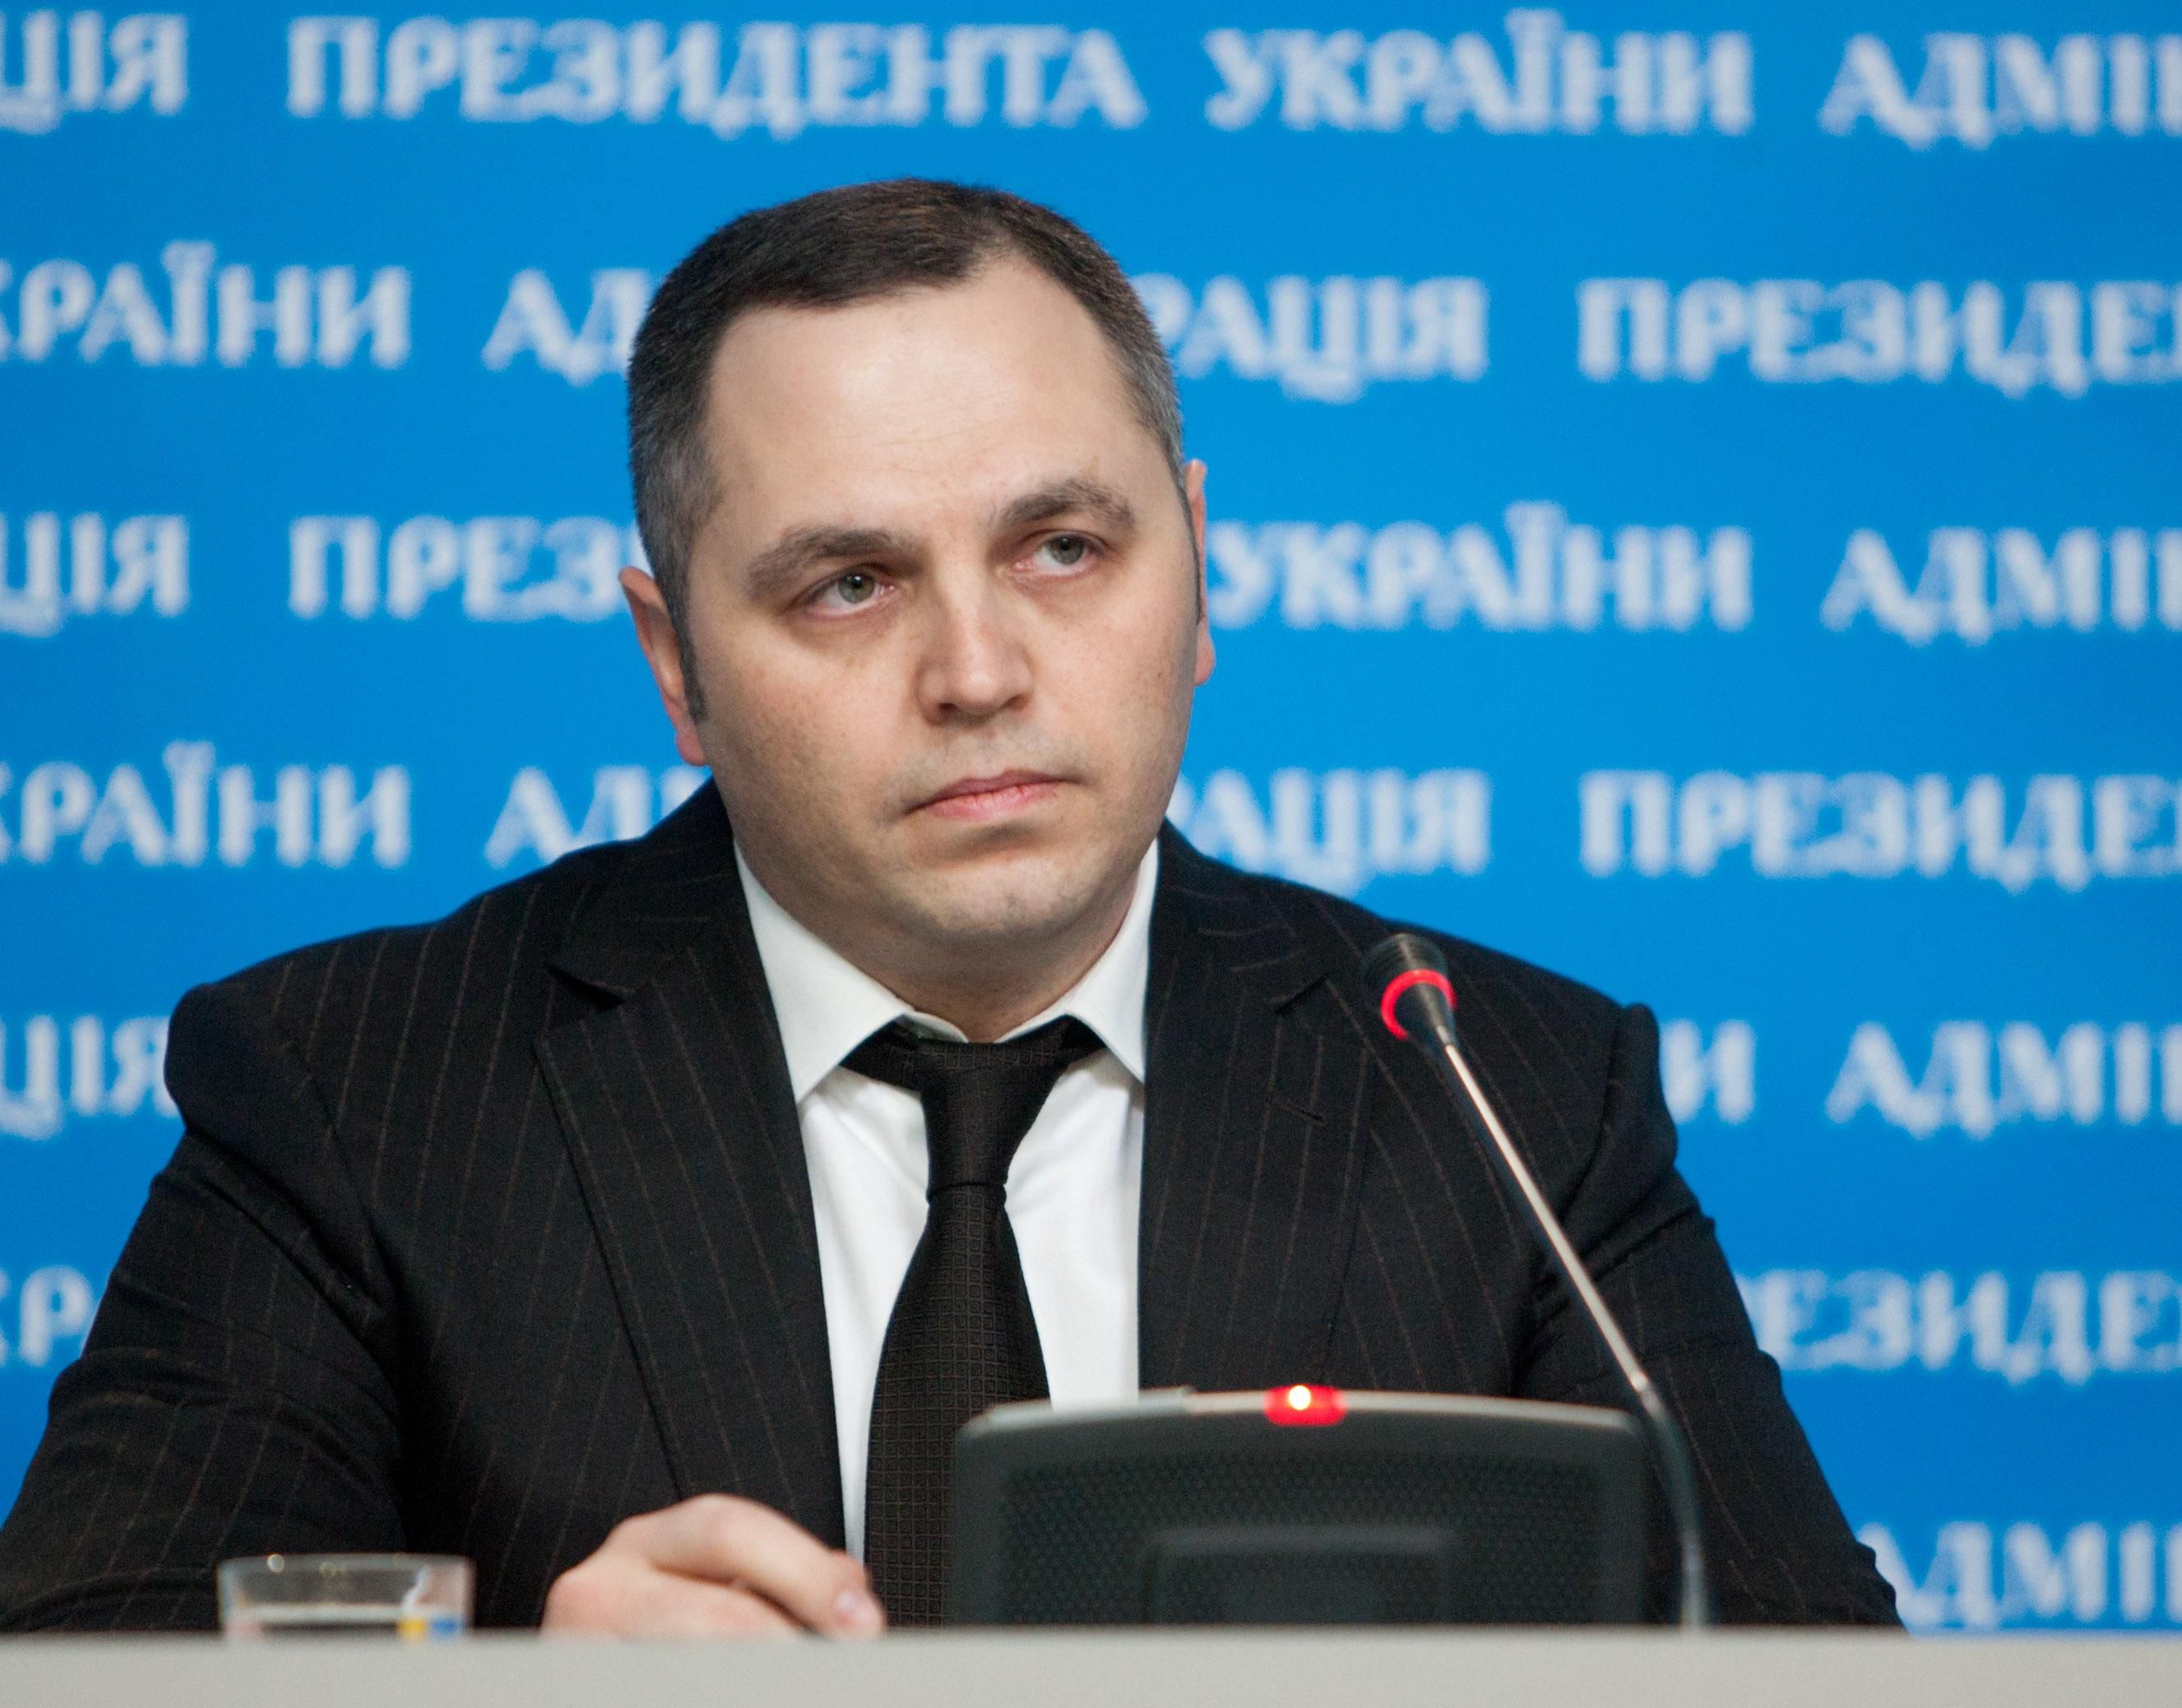 Радник Януковича Андрій Портнов в Україні: чому він повернувся